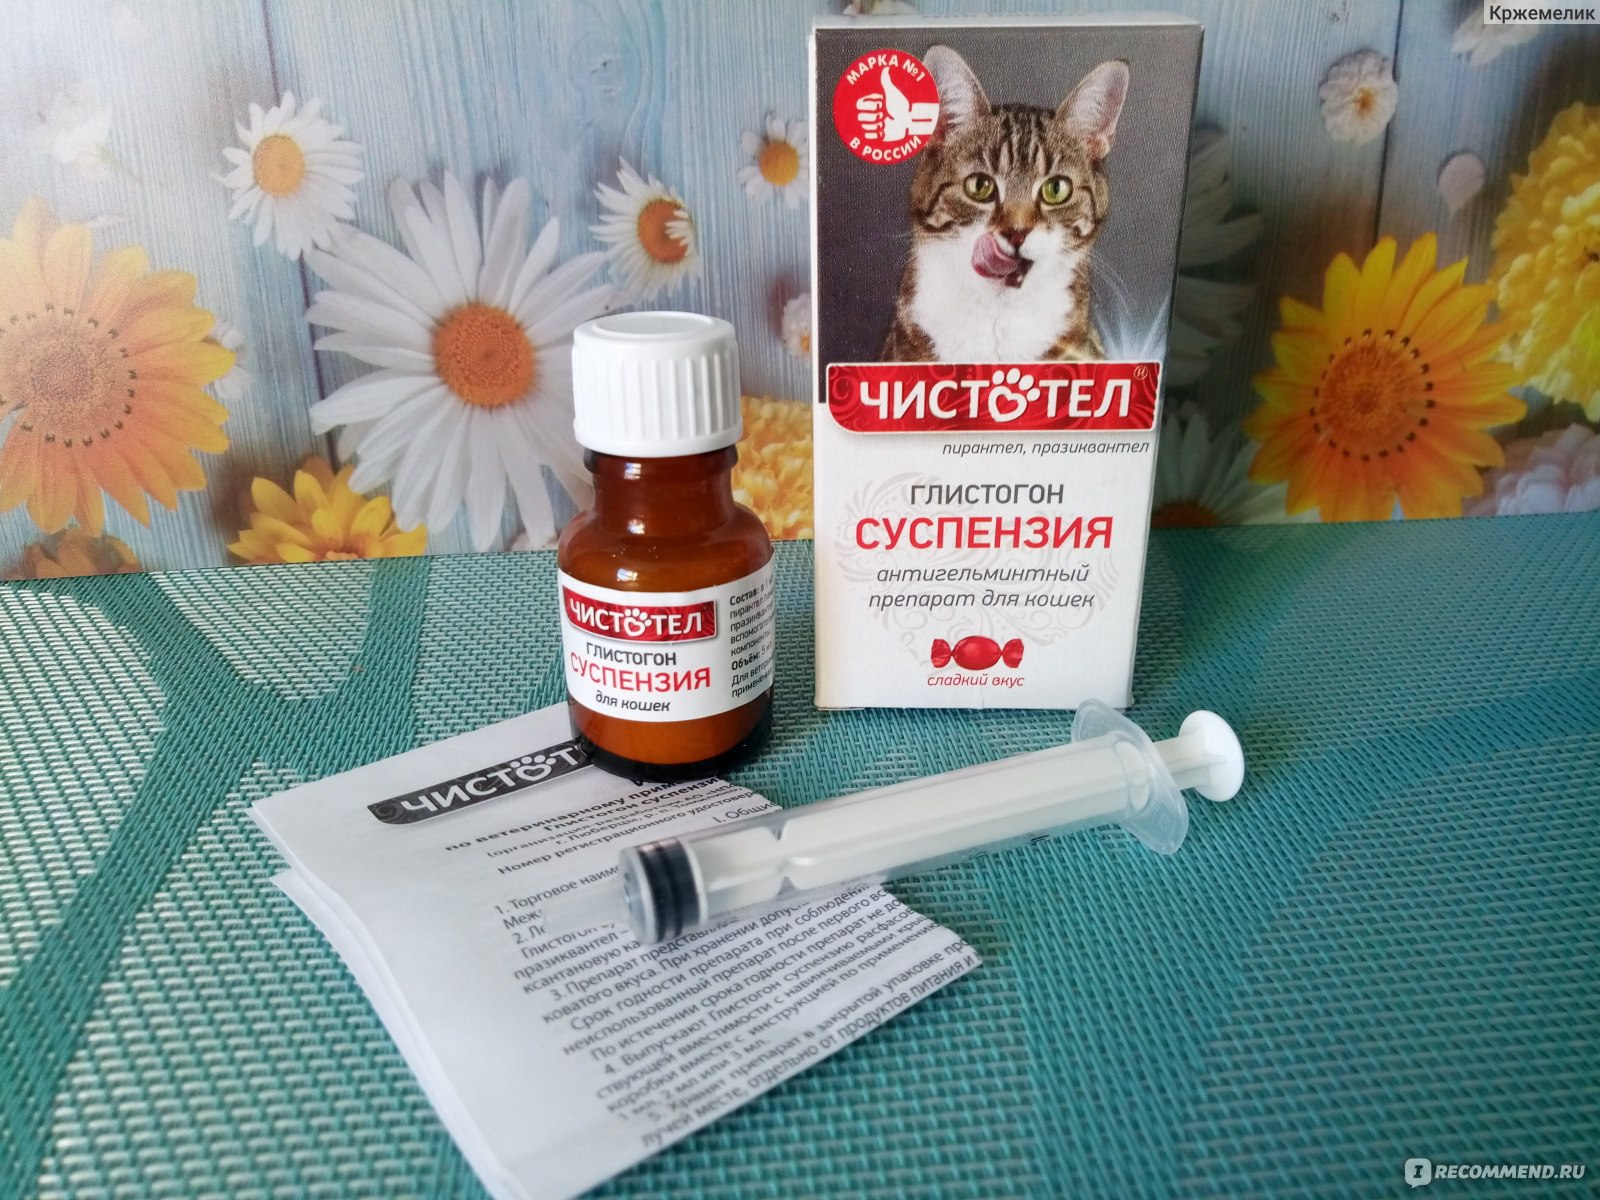 Антигельминтики Чистотел Гельминтал суспензия для кошек - «Не пошел у нас  этот препарат» | отзывы